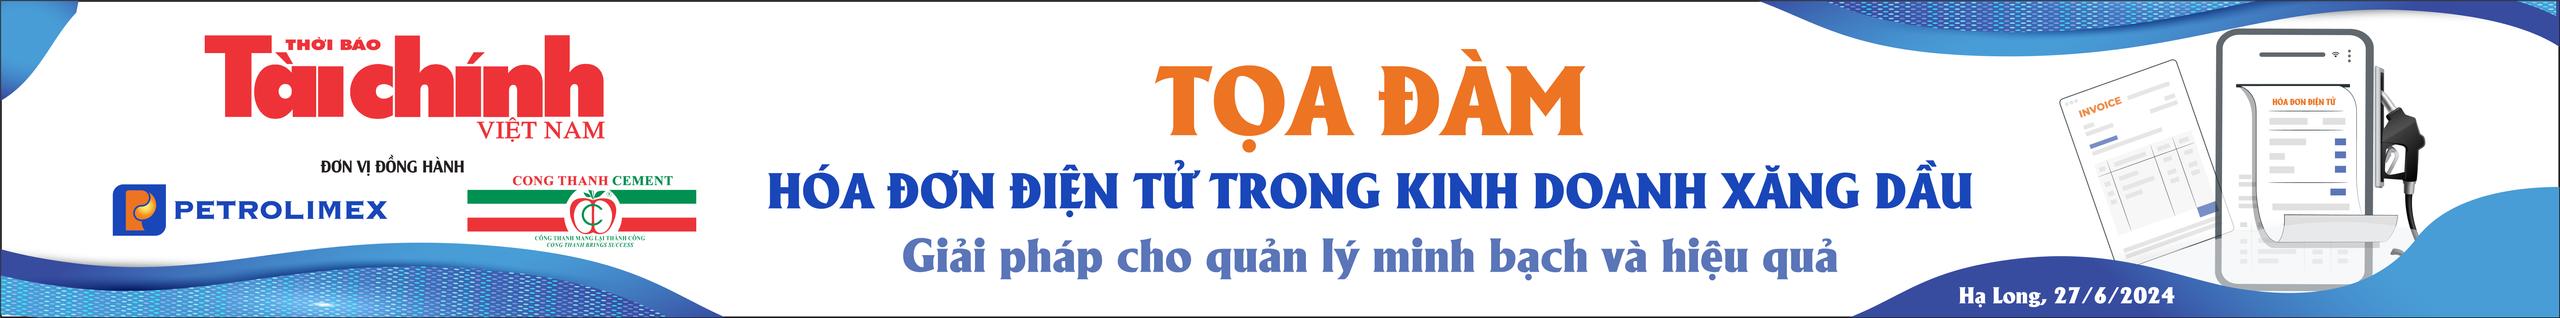 toa-dam-hoa-don-dien-tu-246-172024